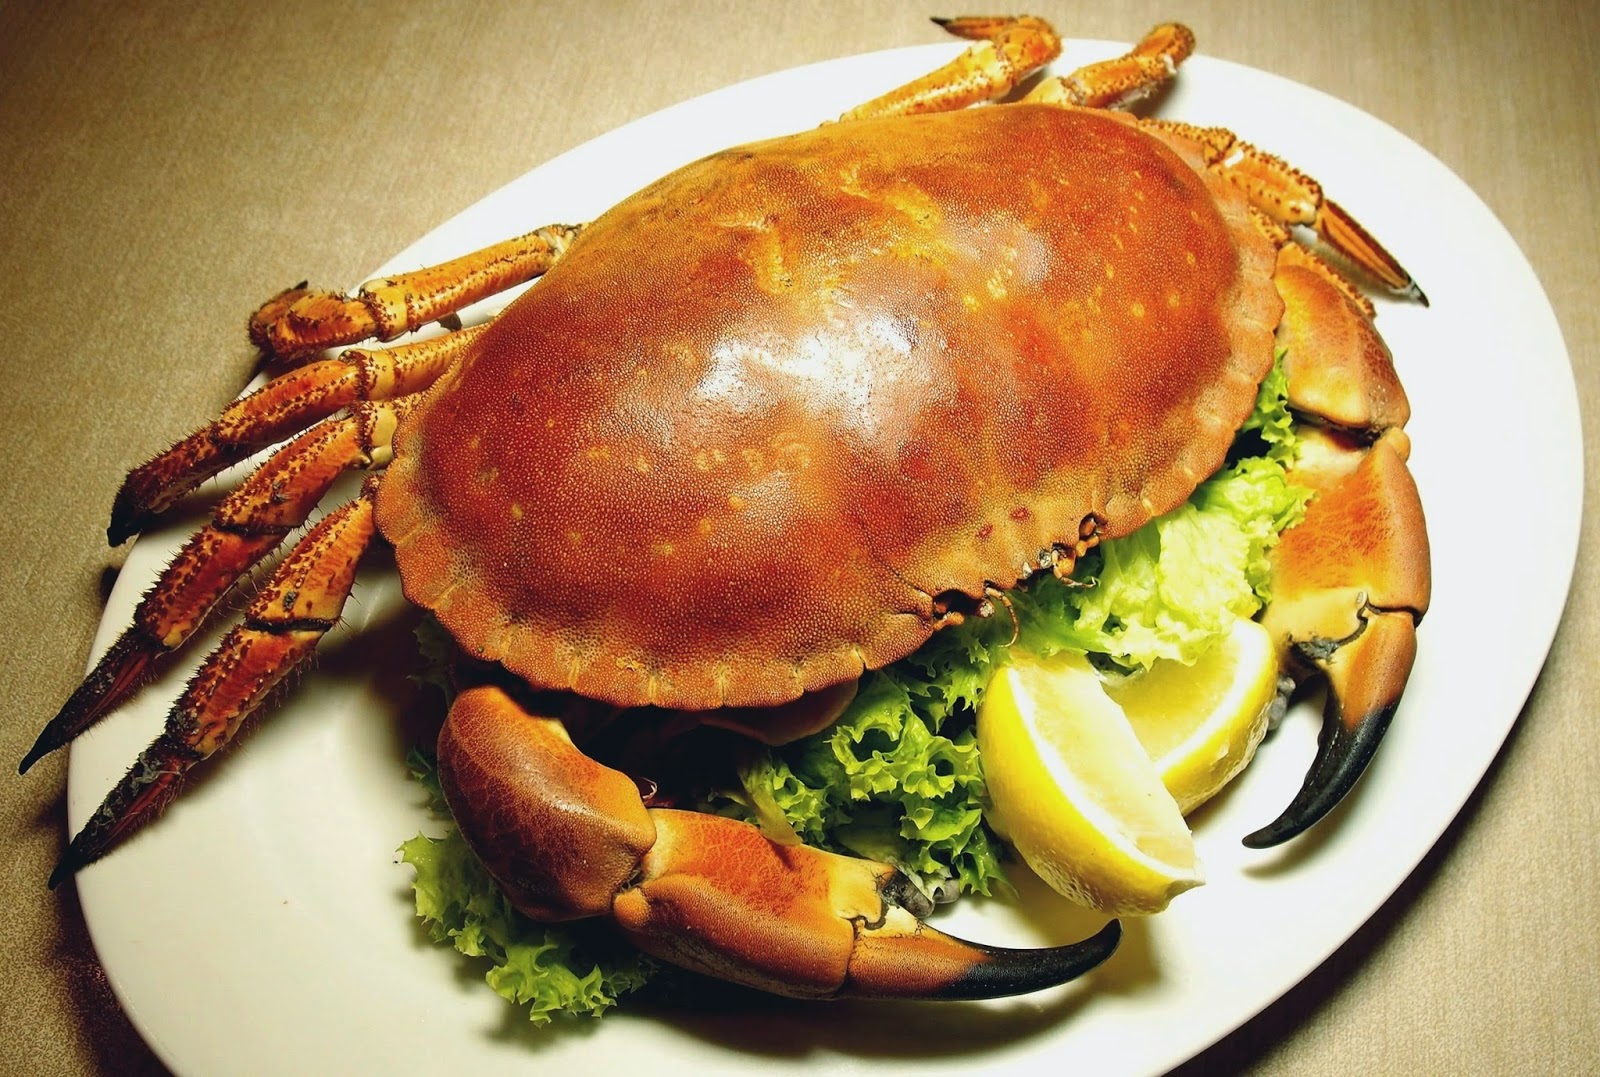 Best Restaurant To Eat: Manhattan Fish Market@ Pavilion - Crab Feast